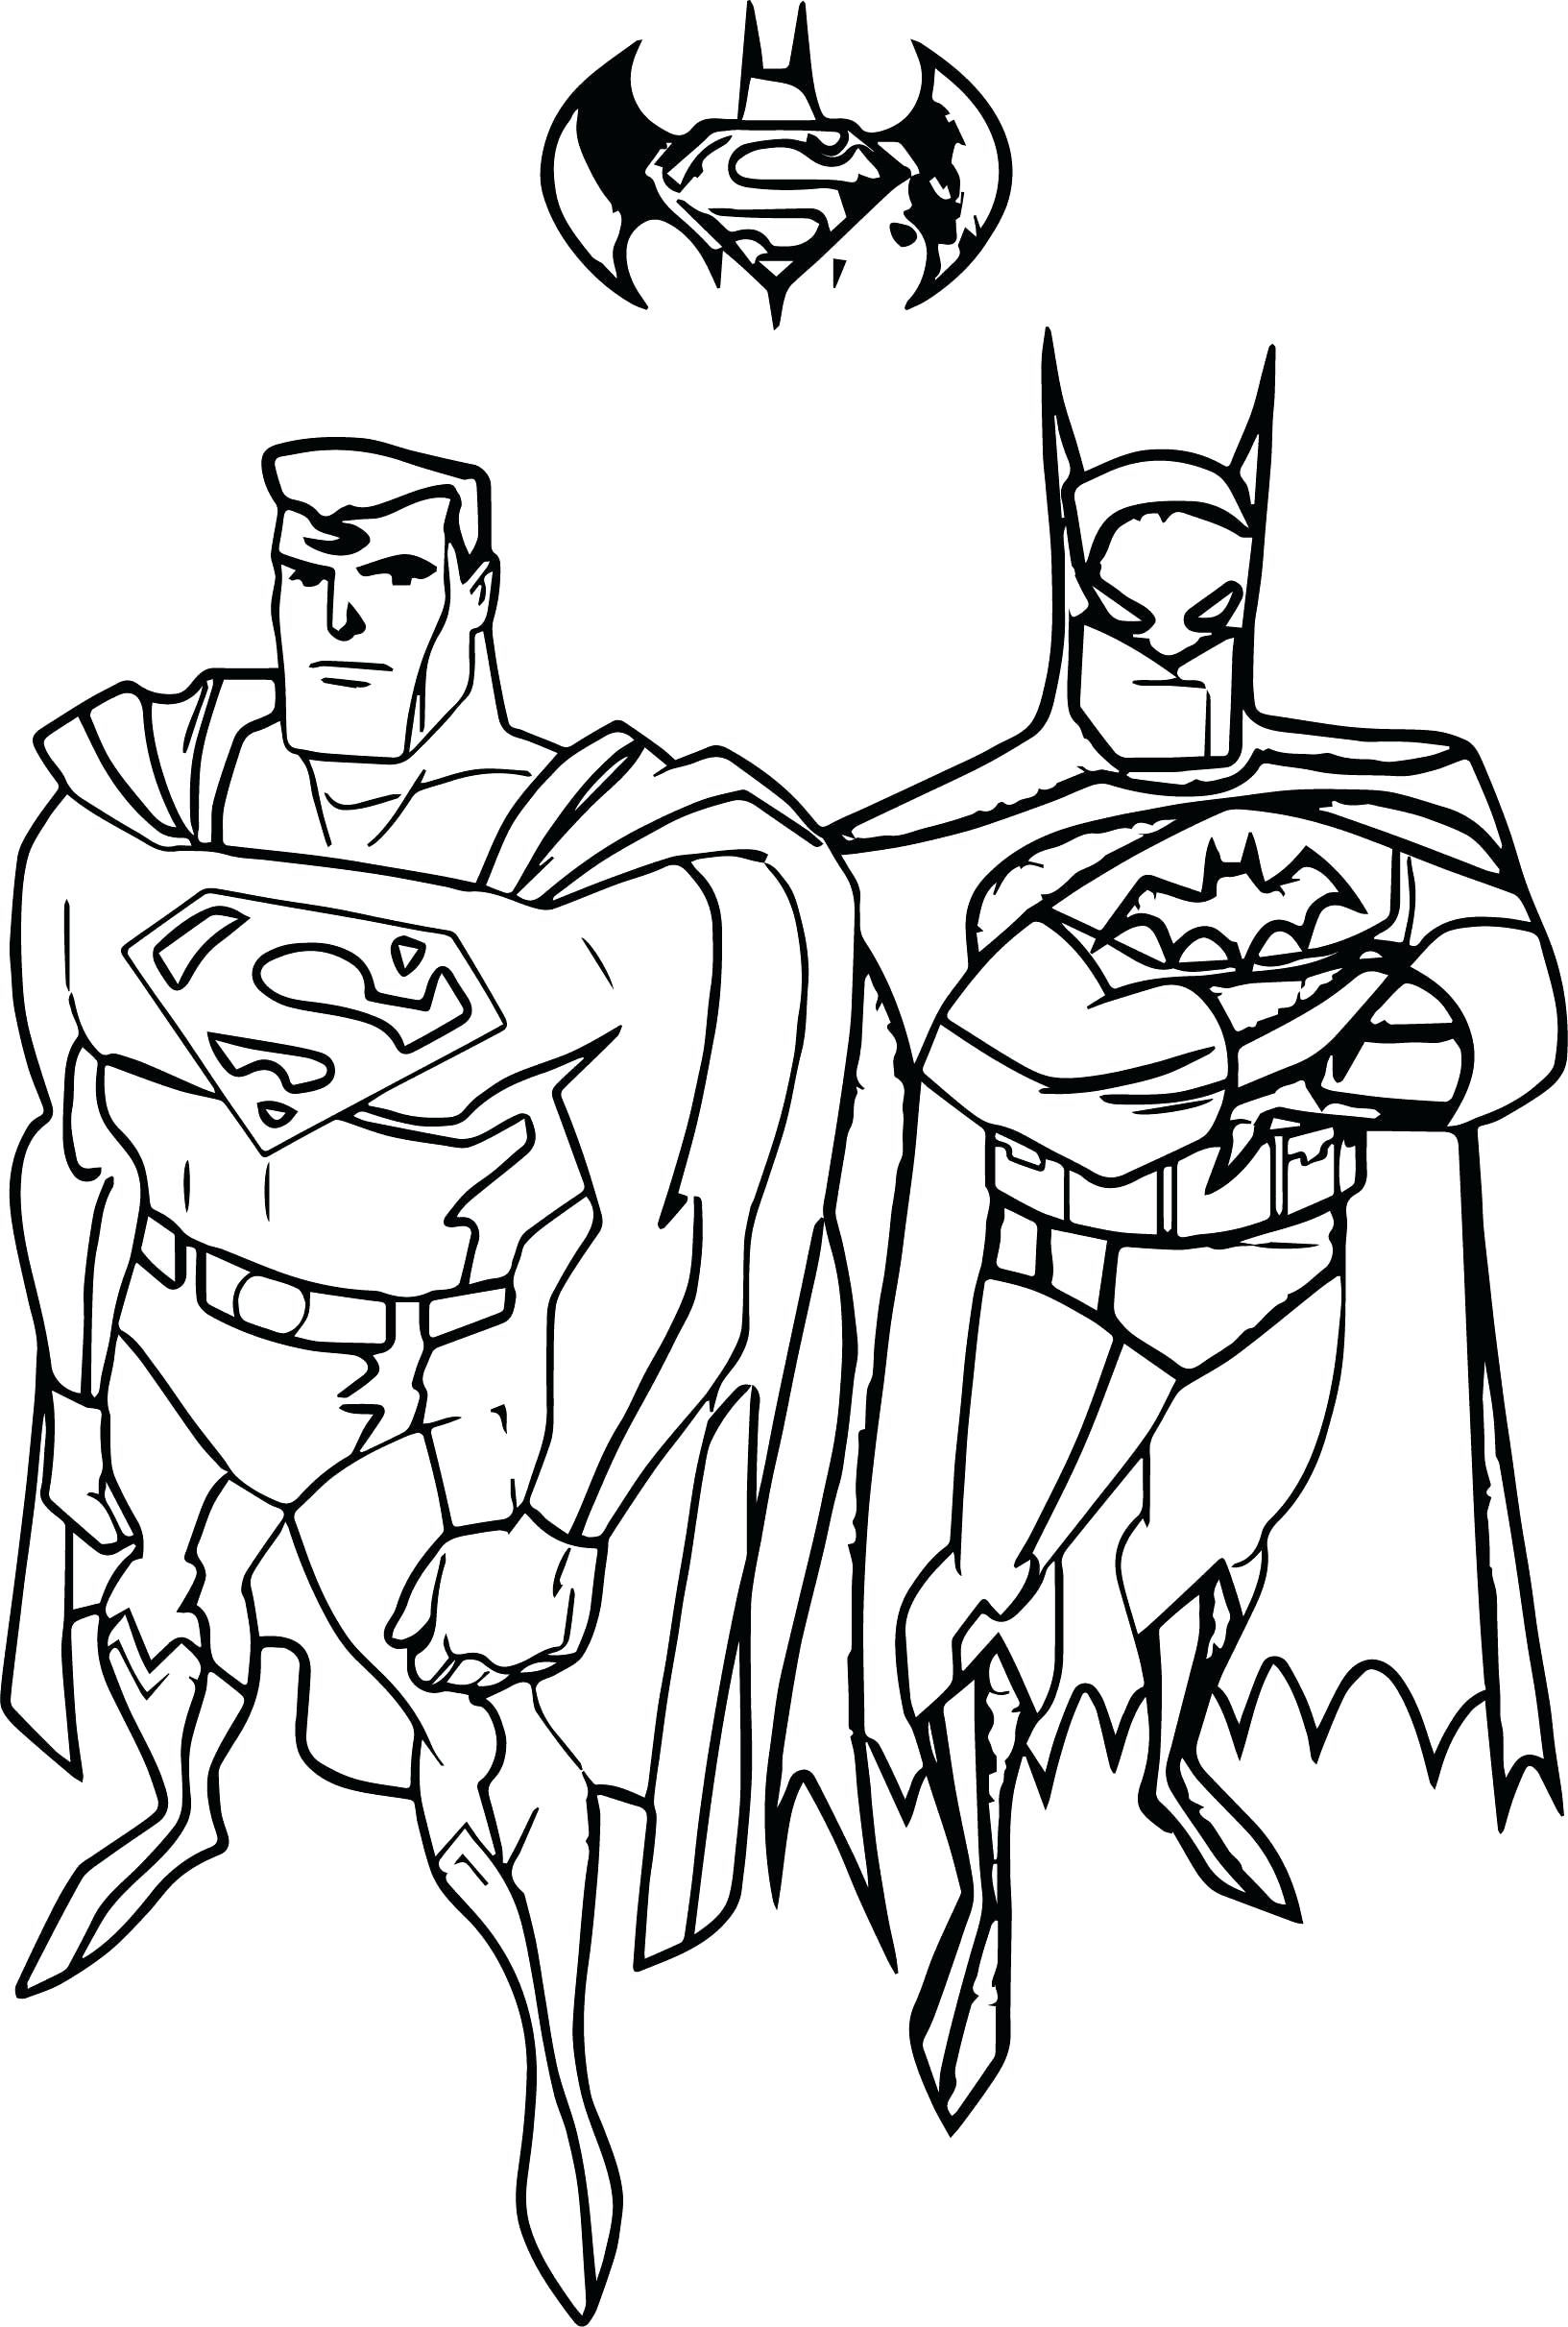 Superman vs Batman Coloring